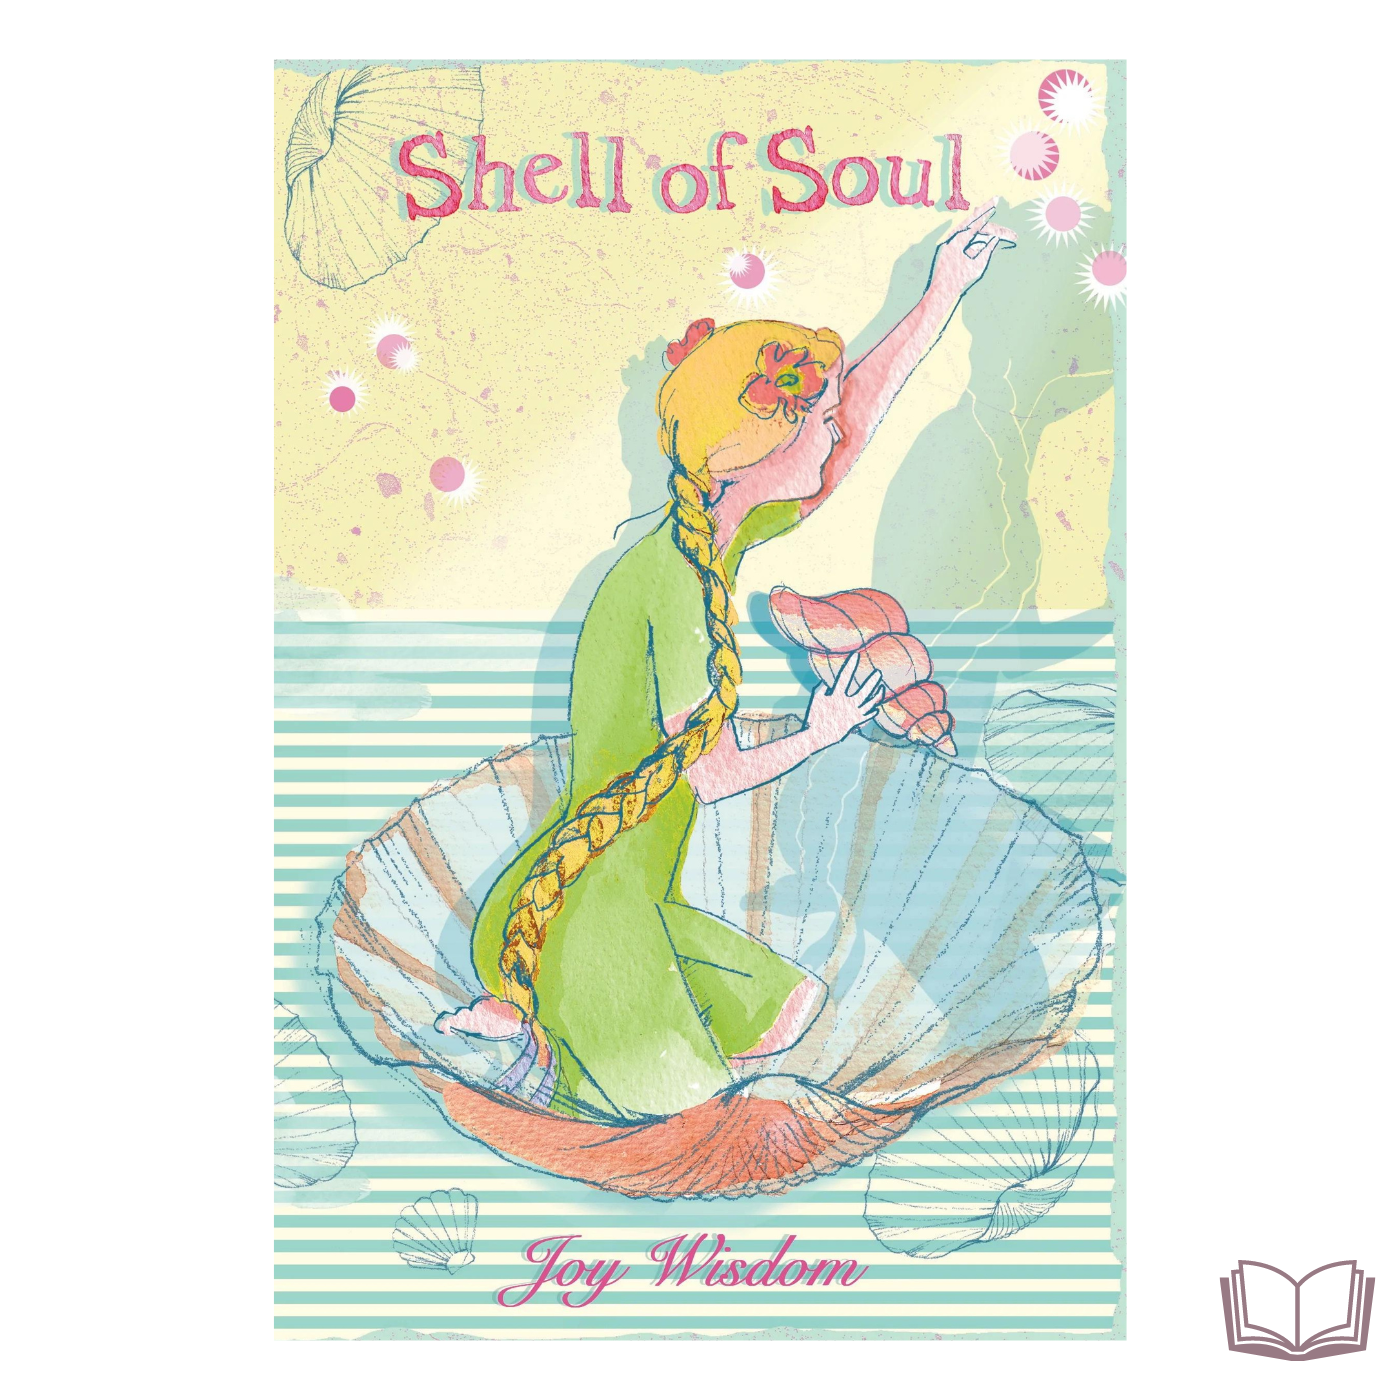 Shell of Soul self development books illustration